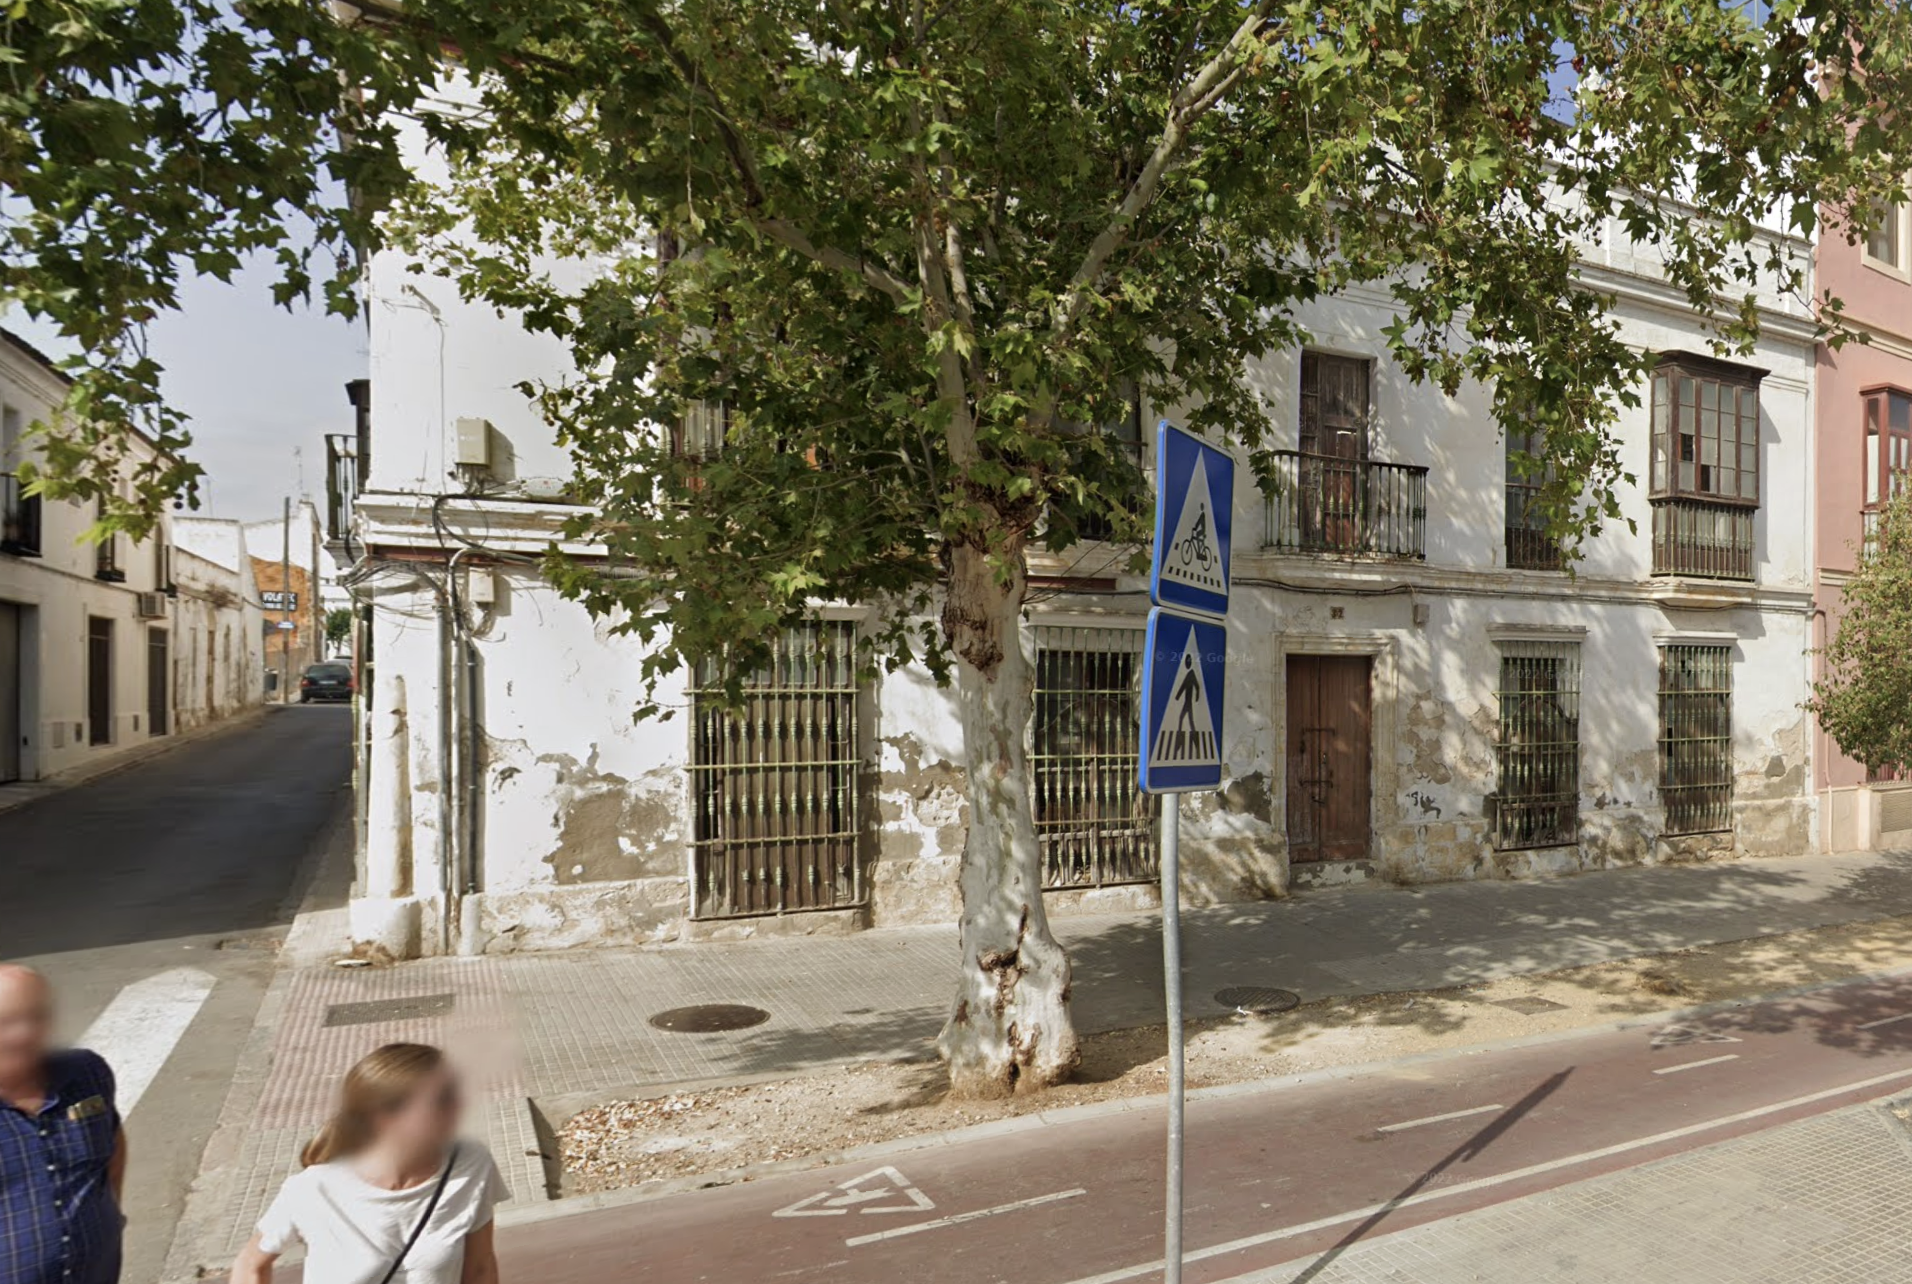 Fachada a conservar: potencial casoplón con un suelo a precio de risa en plena calle Porvenir de Jerez. Imagen de Google Maps de la esquina que ha salido a subasta.